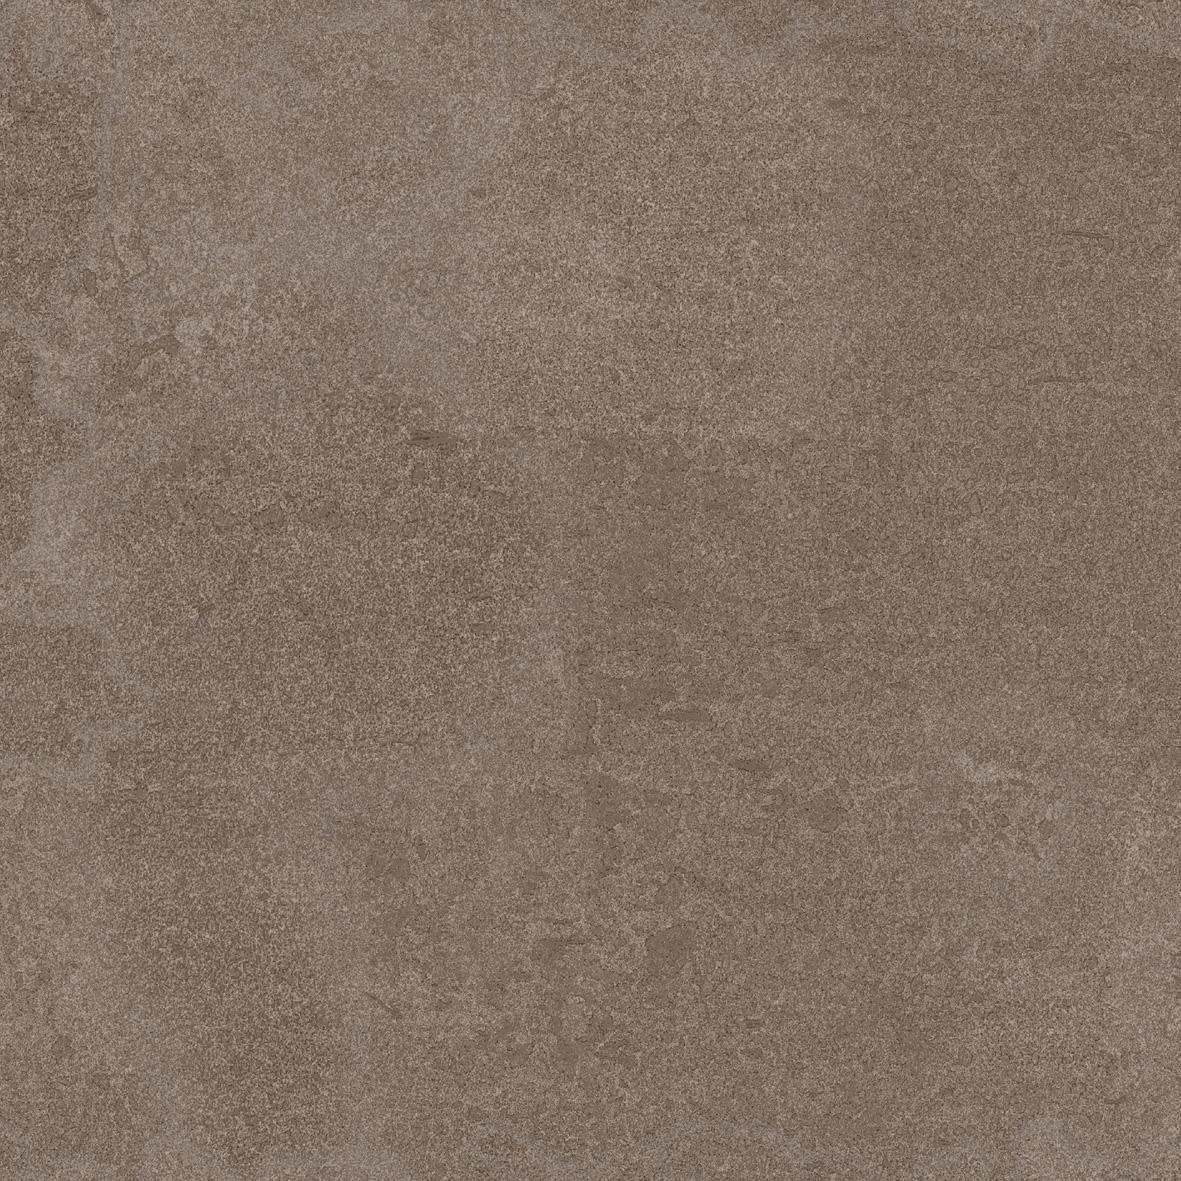 Dark Tiles for Bathroom Tiles, Outdoor/Terrace